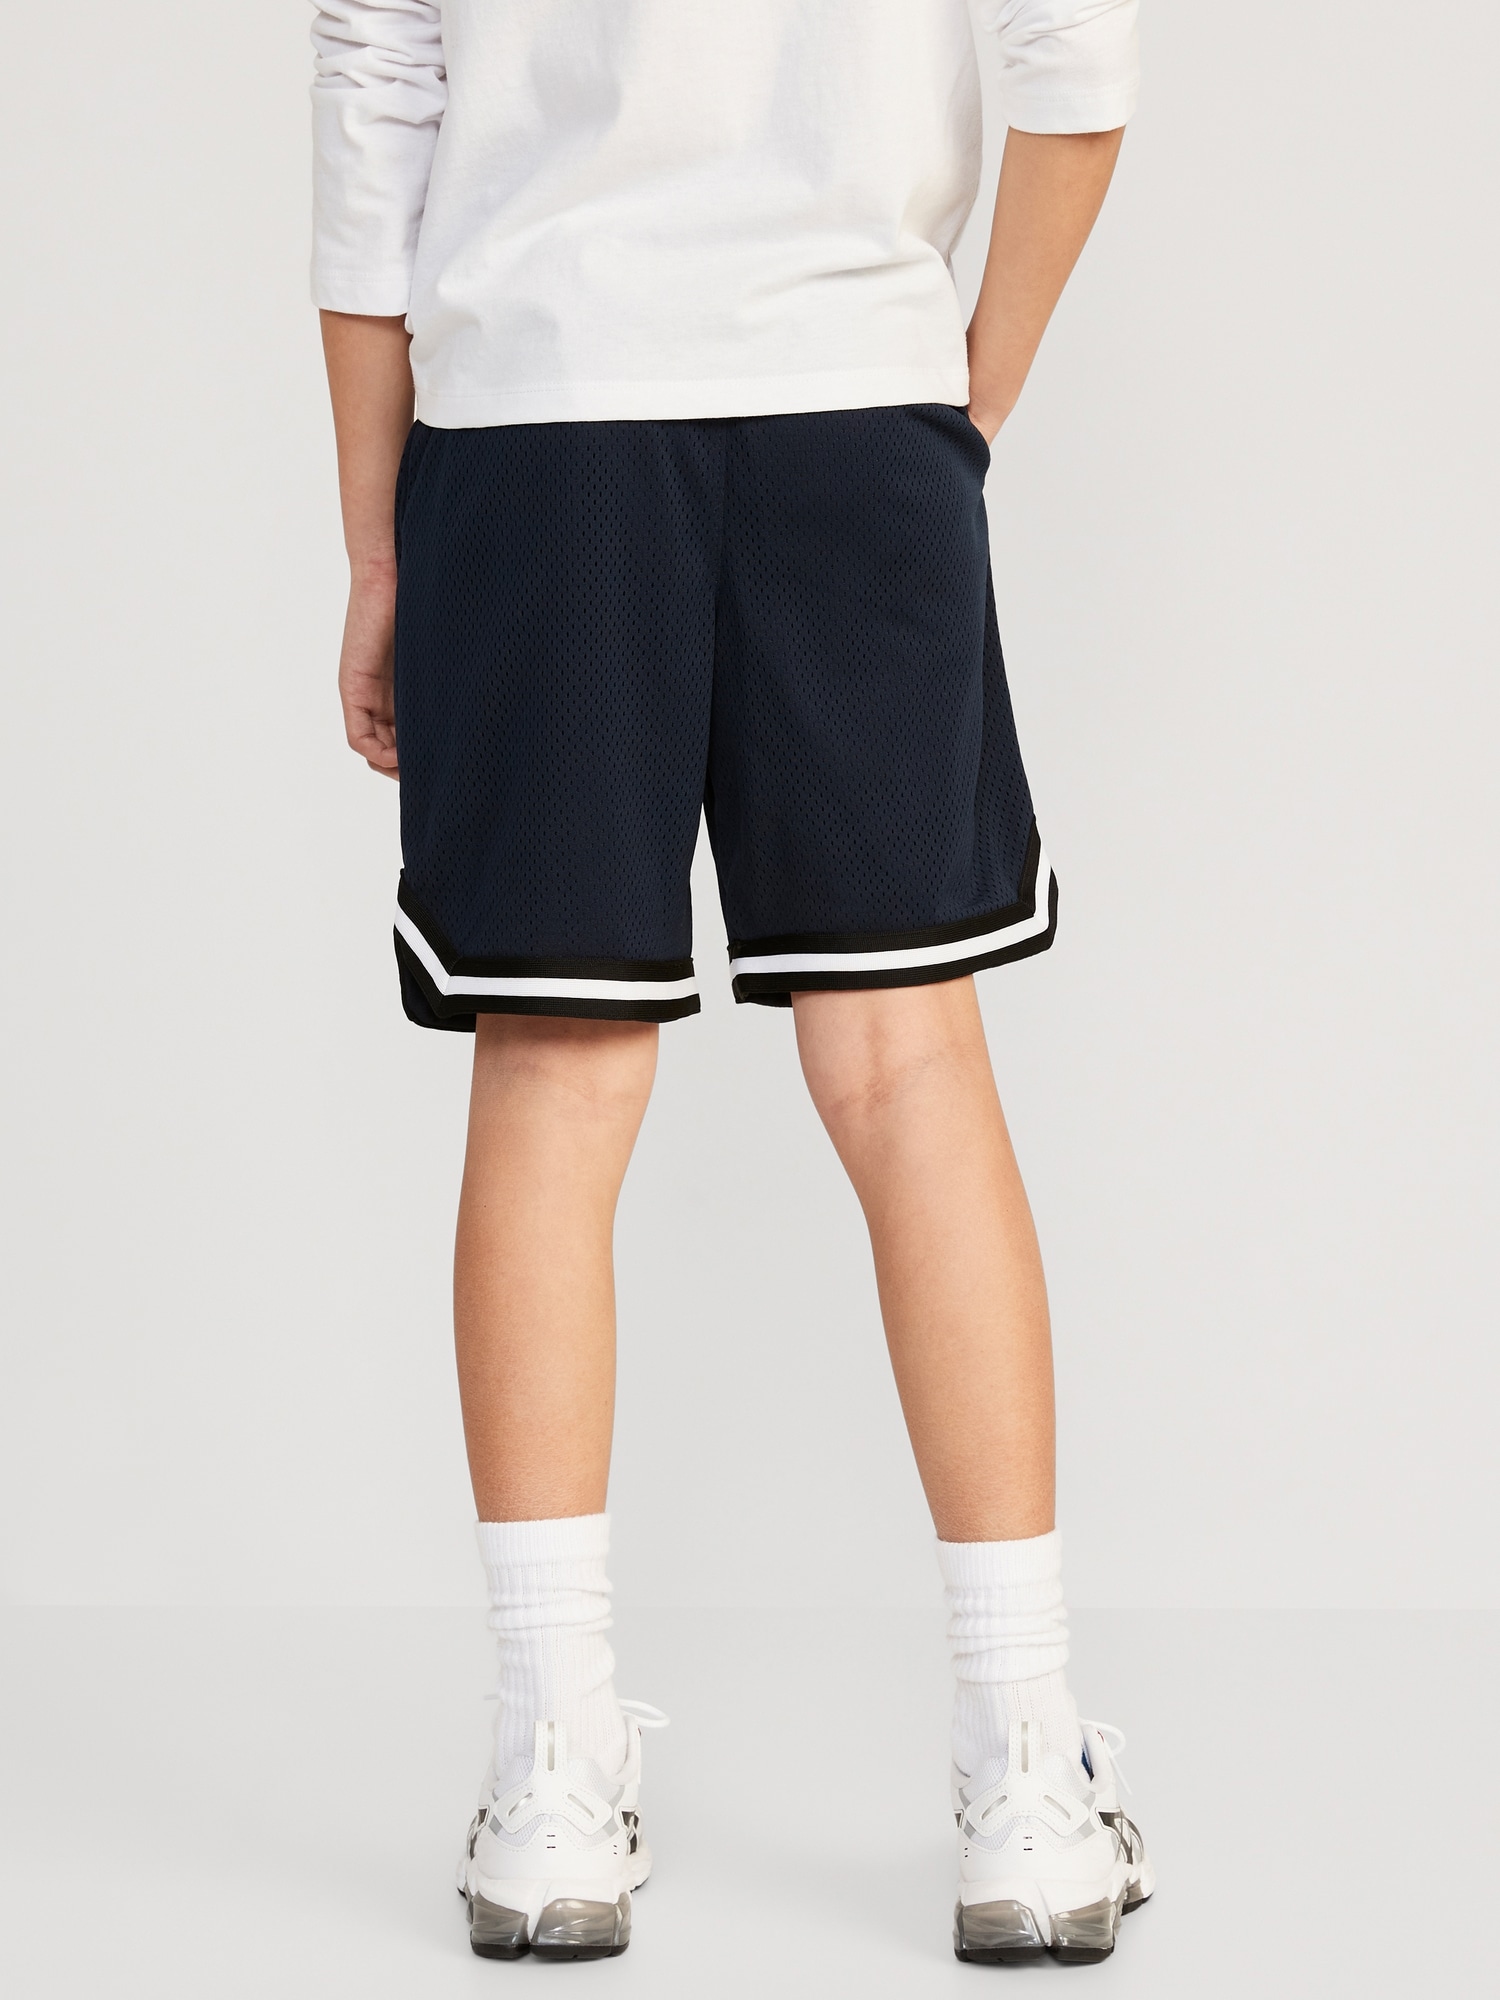 Mesh Basketball Shorts for Boys (At Knee)